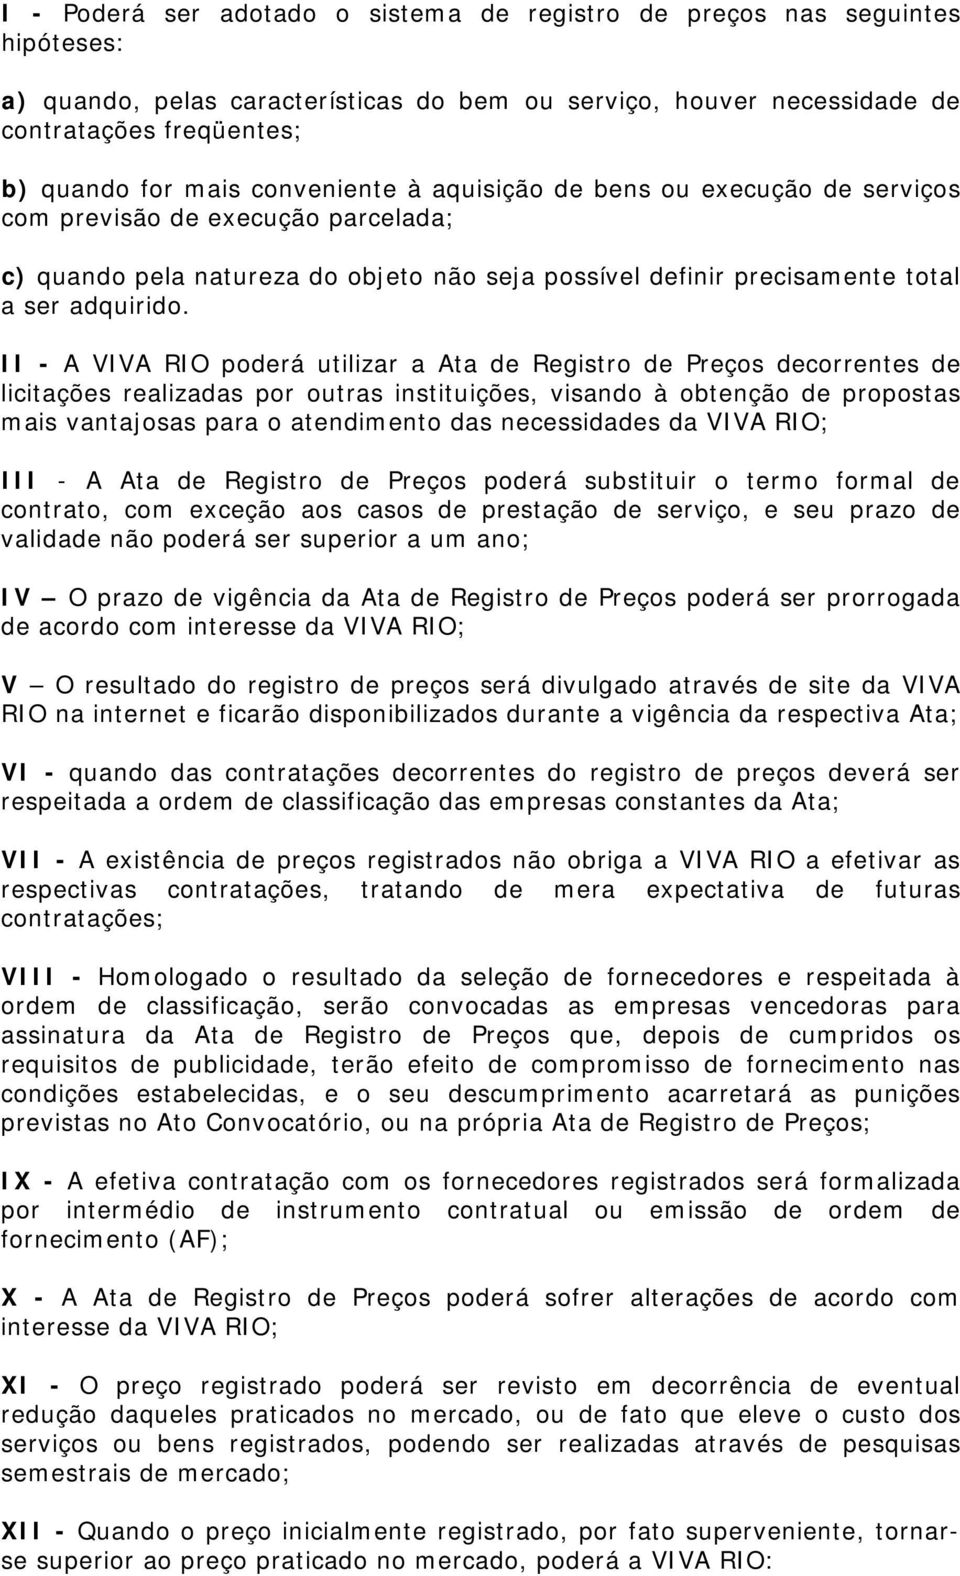 II - A VIVA RIO poderá utilizar a Ata de Registro de Preços decorrentes de licitações realizadas por outras instituições, visando à obtenção de propostas mais vantajosas para o atendimento das